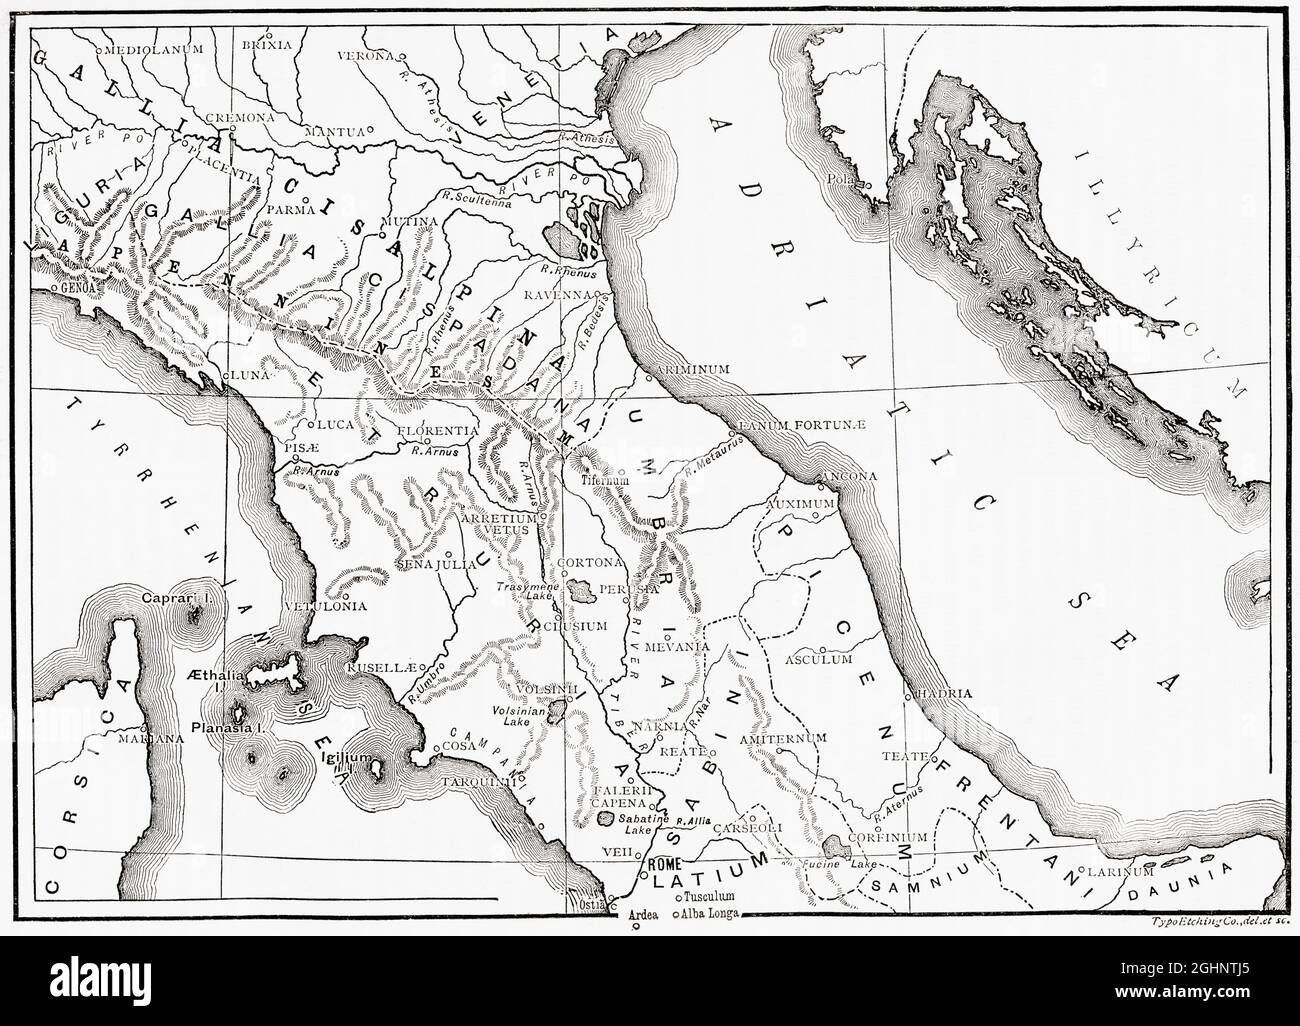 Mappa dell'Italia settentrionale e centrale in tempi antichi. Dalla storia universale illustrata di Cassell, pubblicata nel 1883. Foto Stock